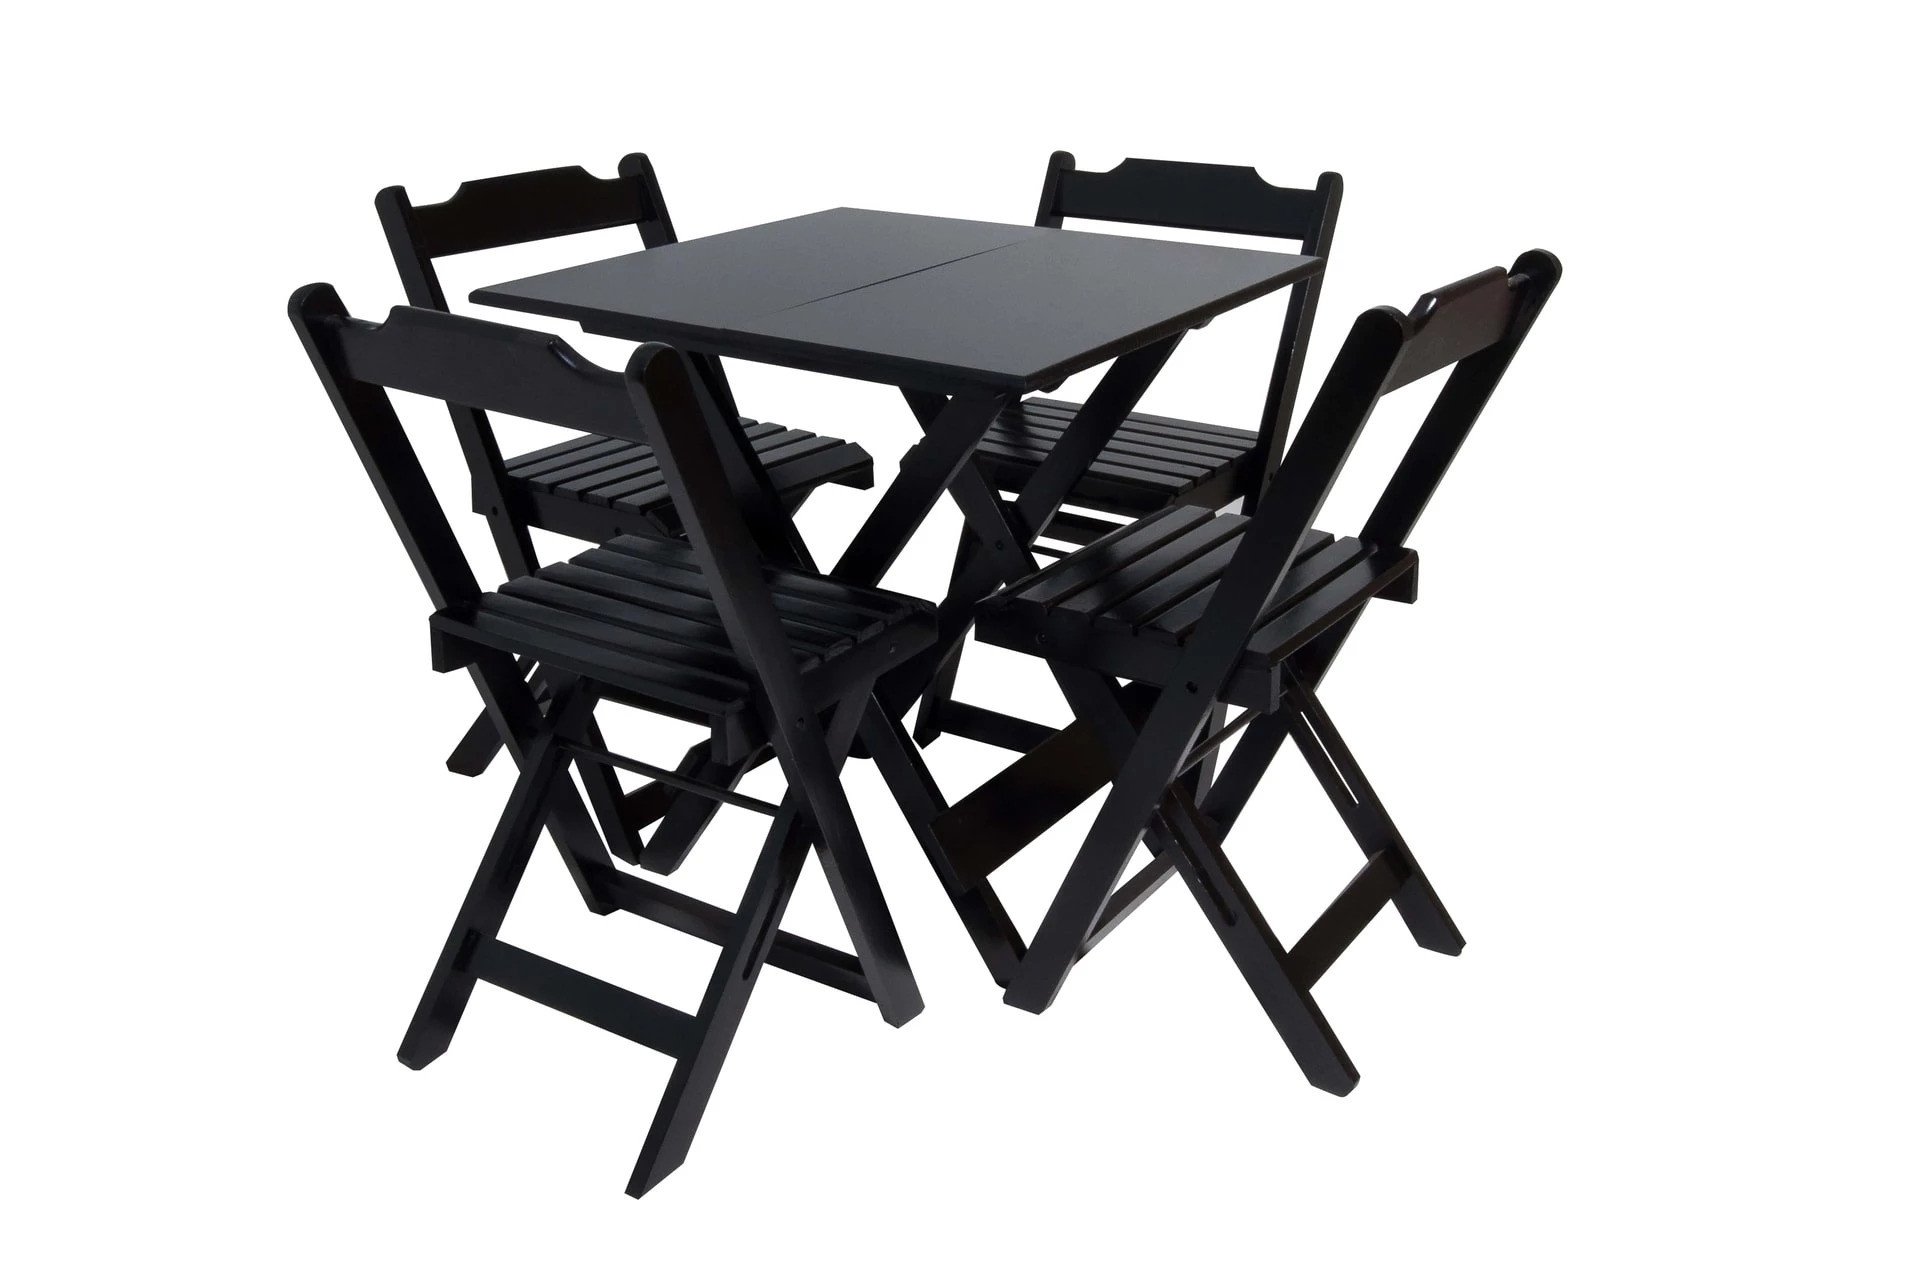 Kit com 10 Conjuntos de Jogo de Mesa 70x70 com 4 Cadeiras Dobráveis - Dg Móveis:preto - 1